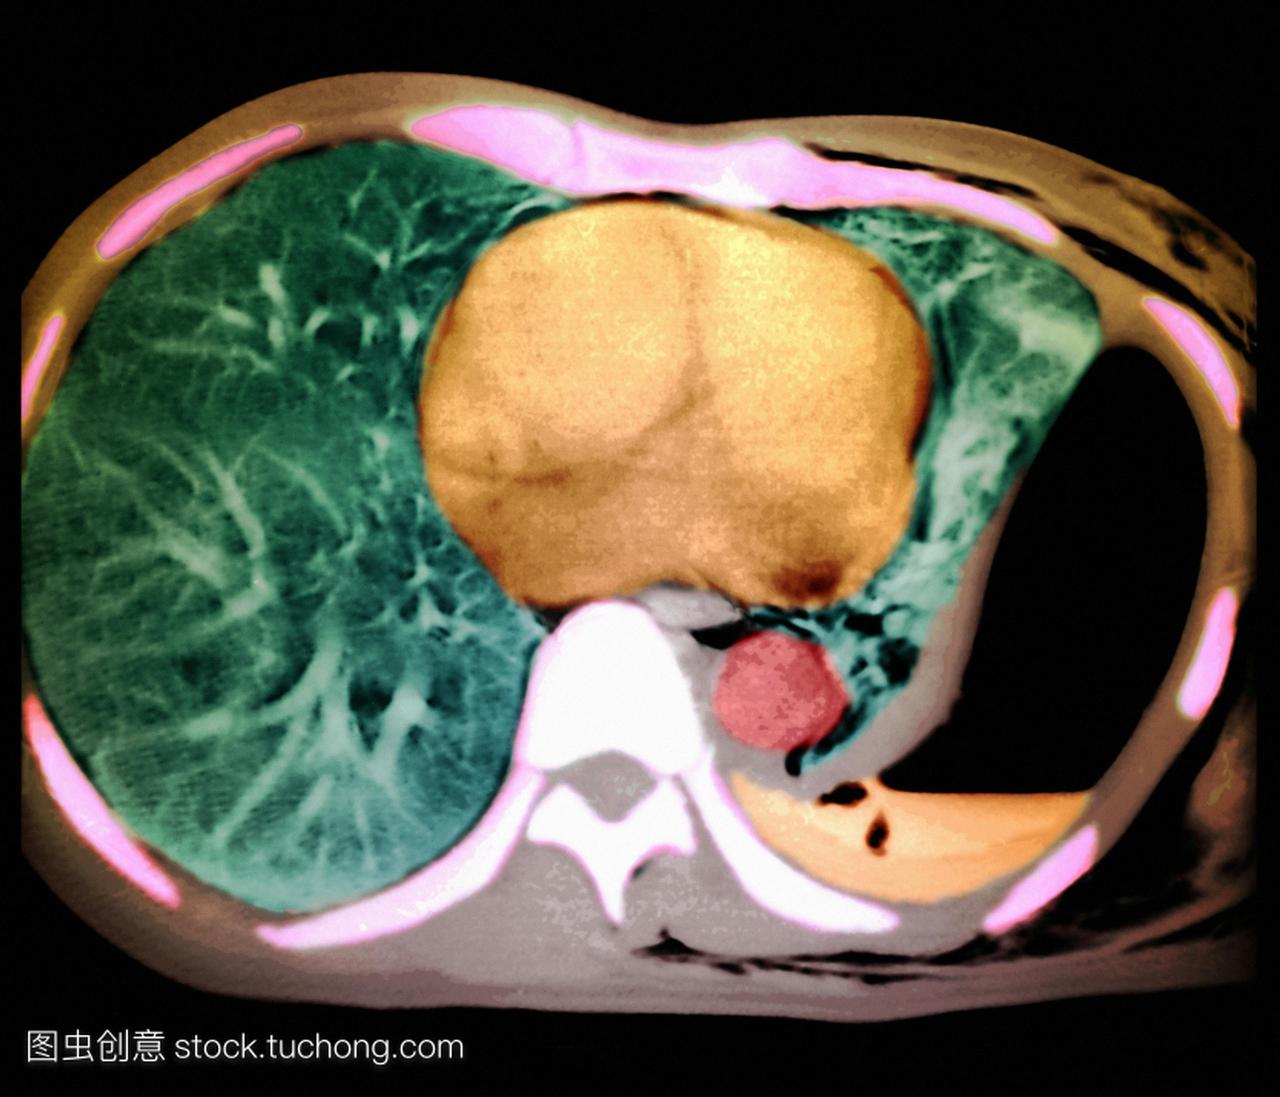 计算机断层扫描ct扫描病人的胸部前面的身体是